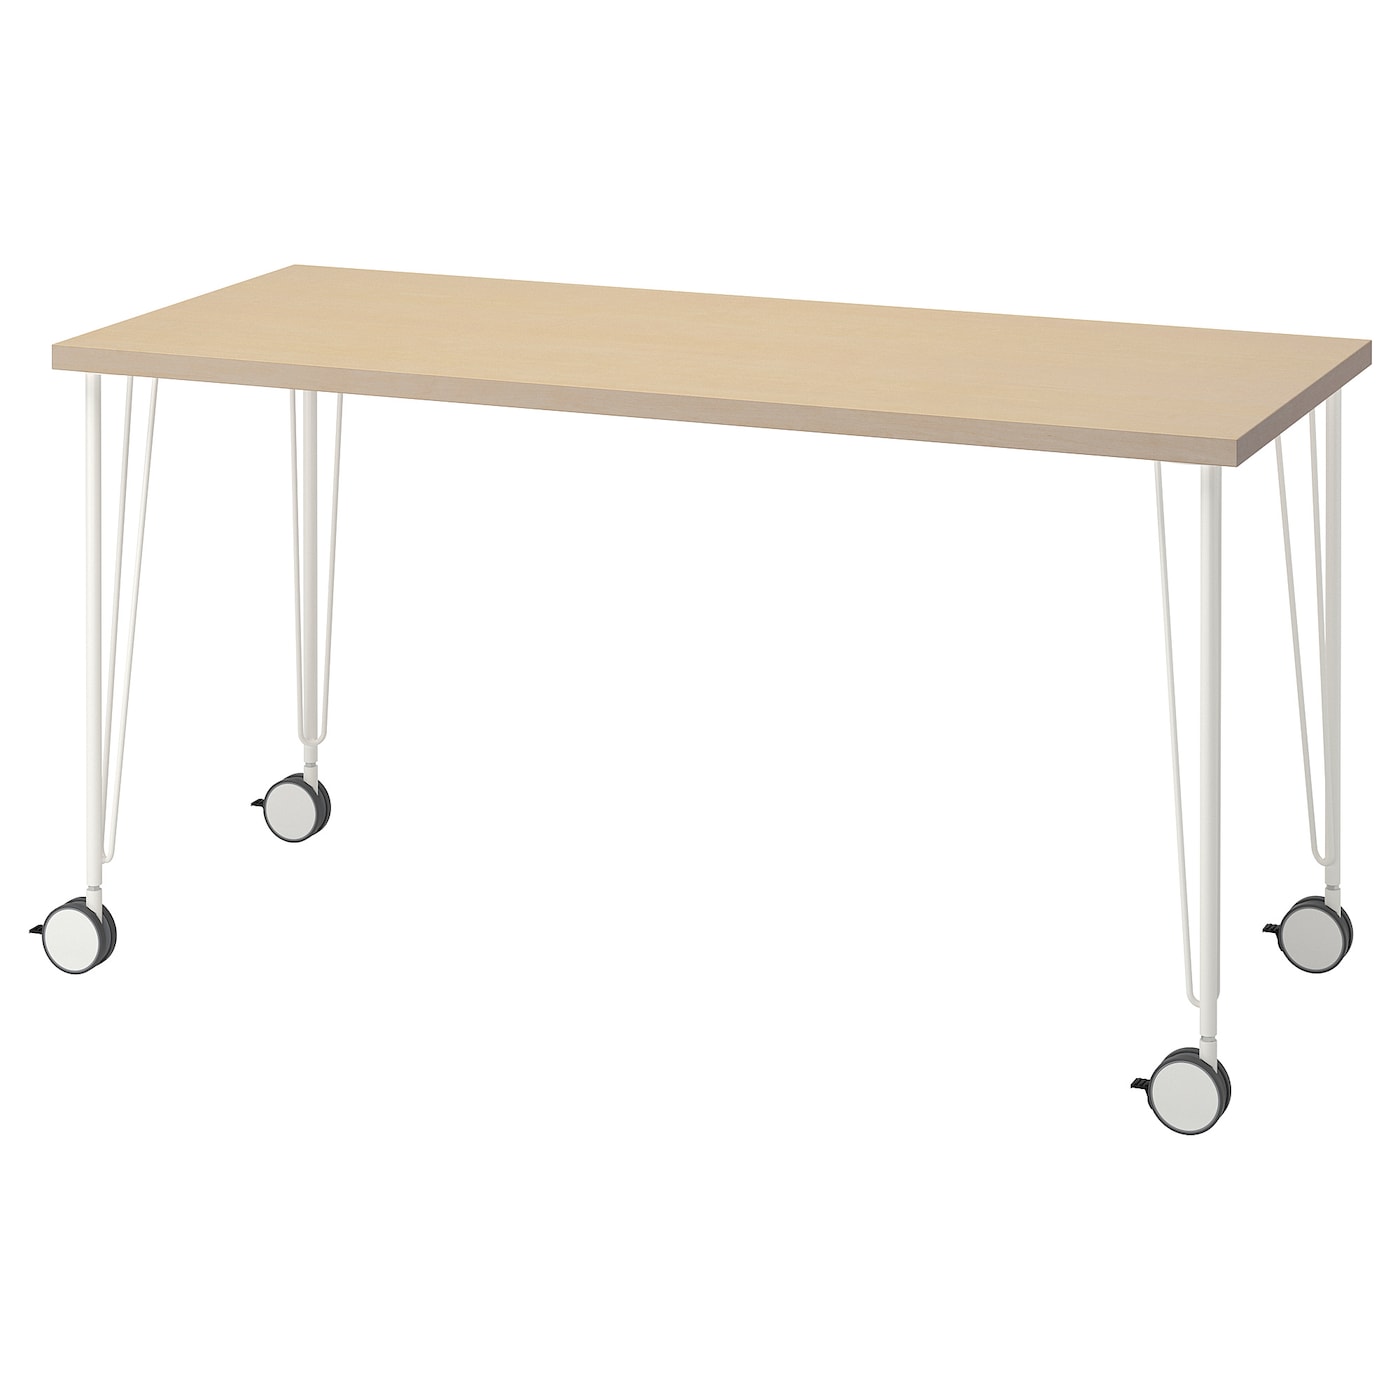 Рабочий стол - IKEA MÅLSKYTT/MALSKYTT/KRILLE, 140х60 см, береза/белый, МОЛСКЮТТ/КРИЛЛЕ ИКЕА